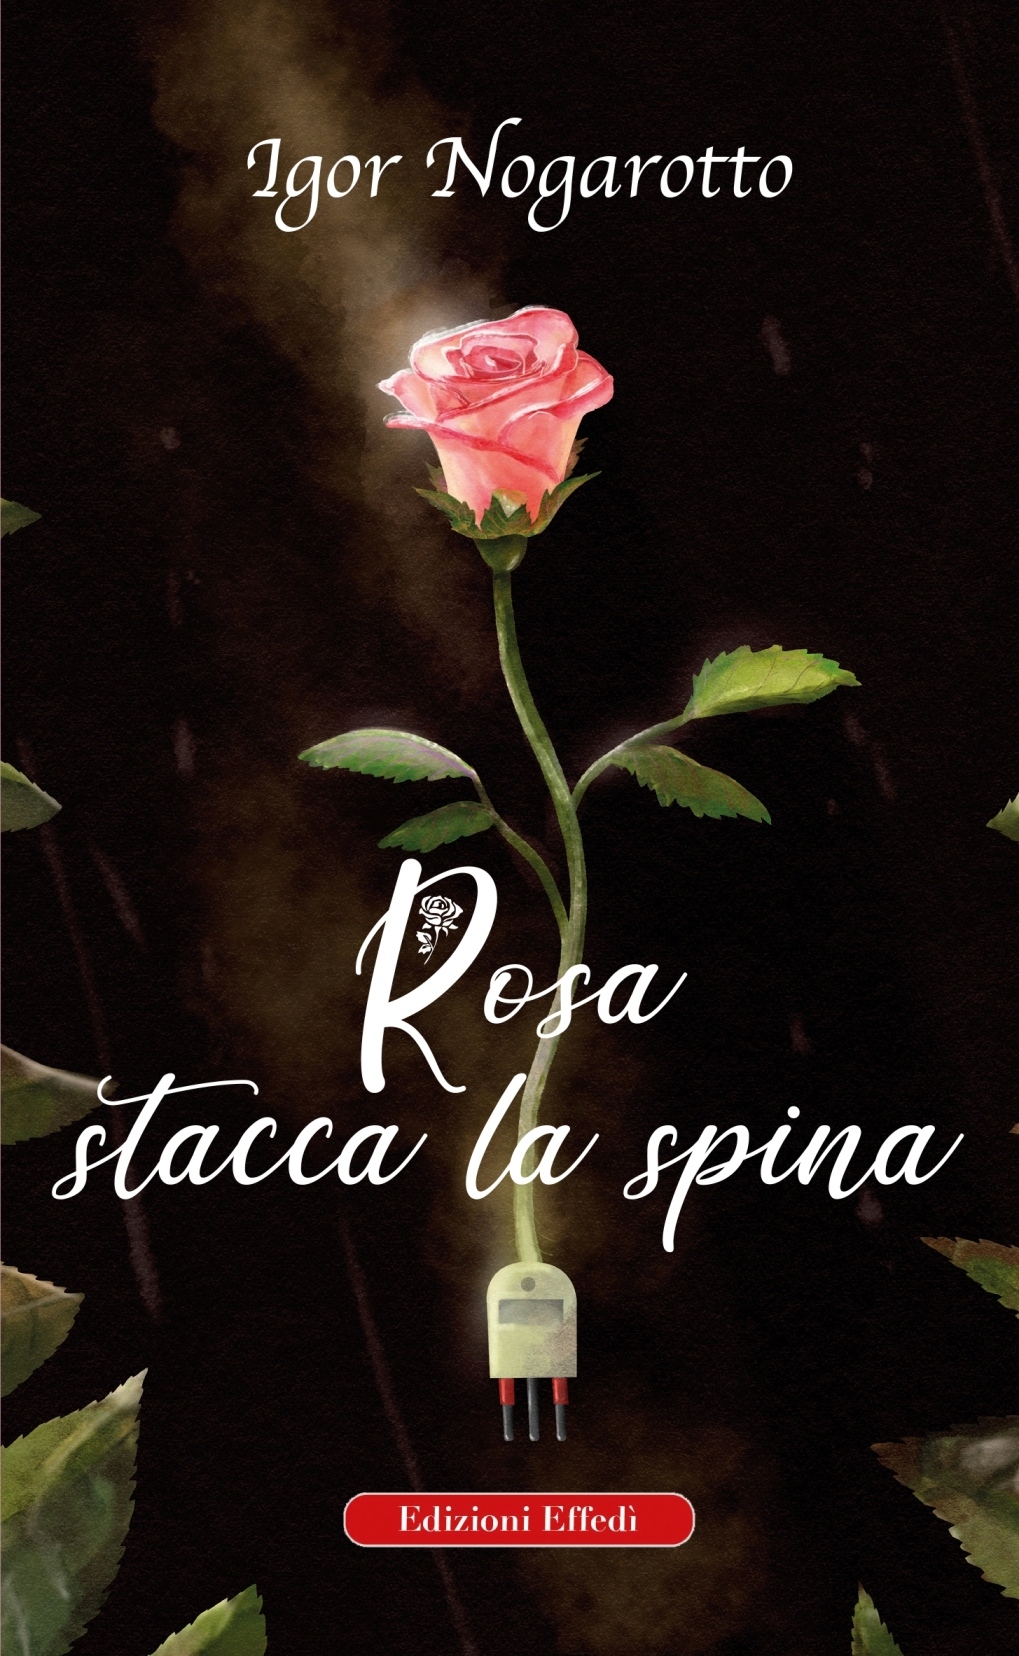 “Rosa stacca la spina” di Igor Nogarotto